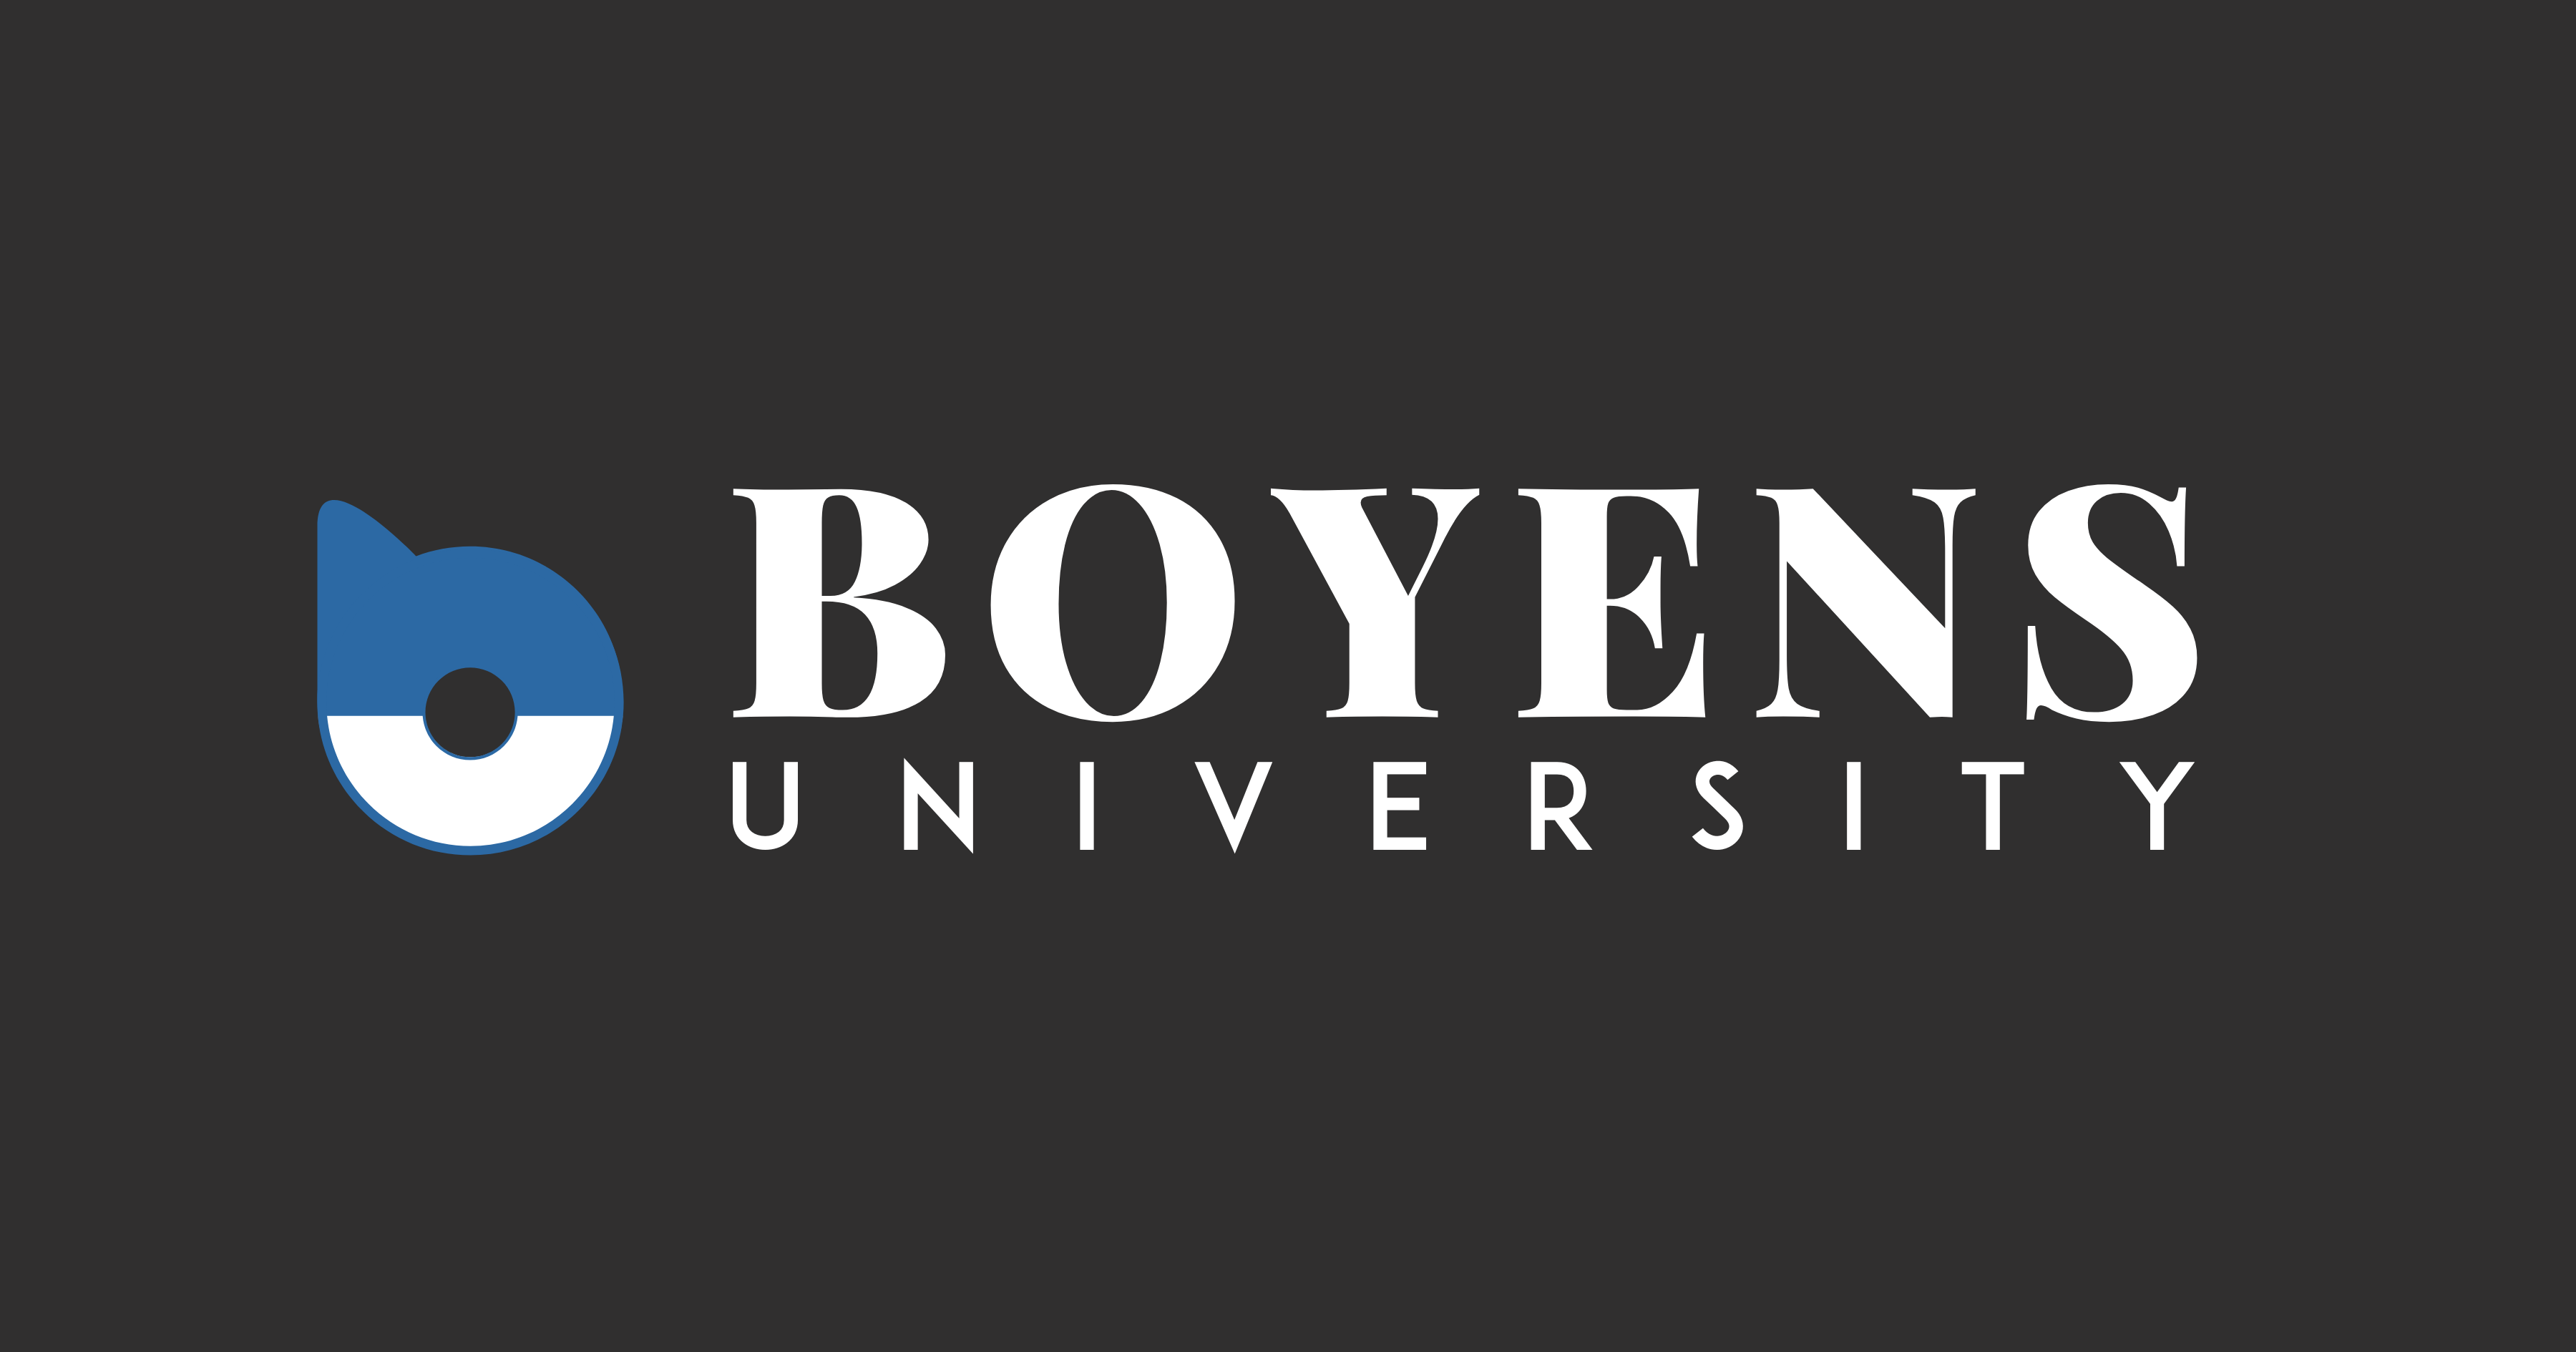 Boyens University logo